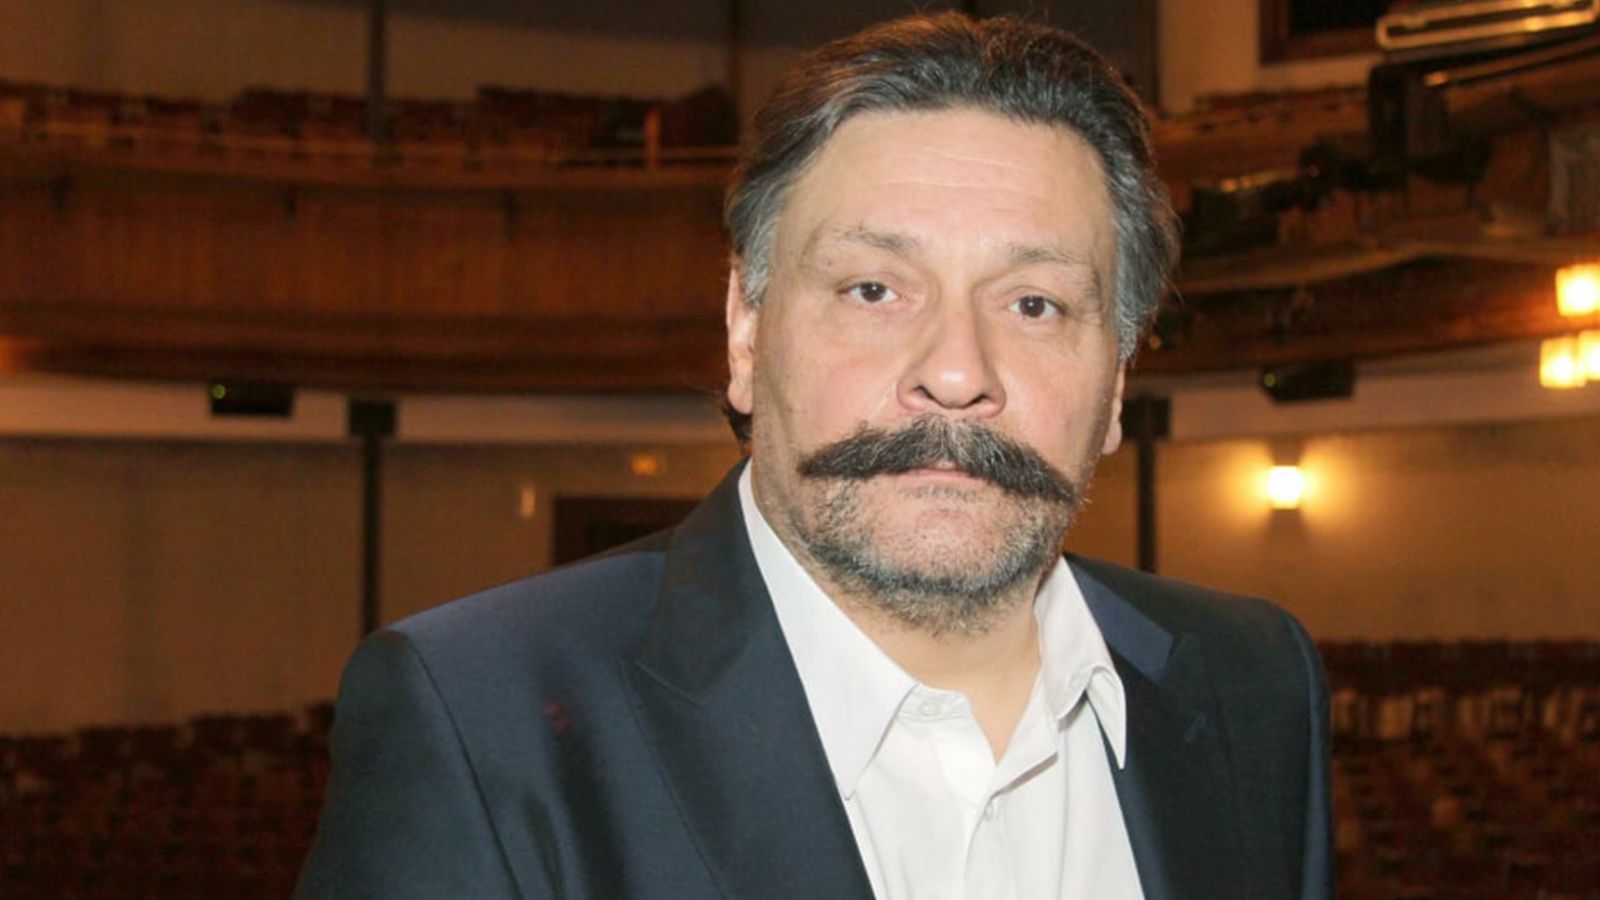 Режиссер Зеленов заявил, что ему угрожали после увольнения Назарова из «12 стульев»